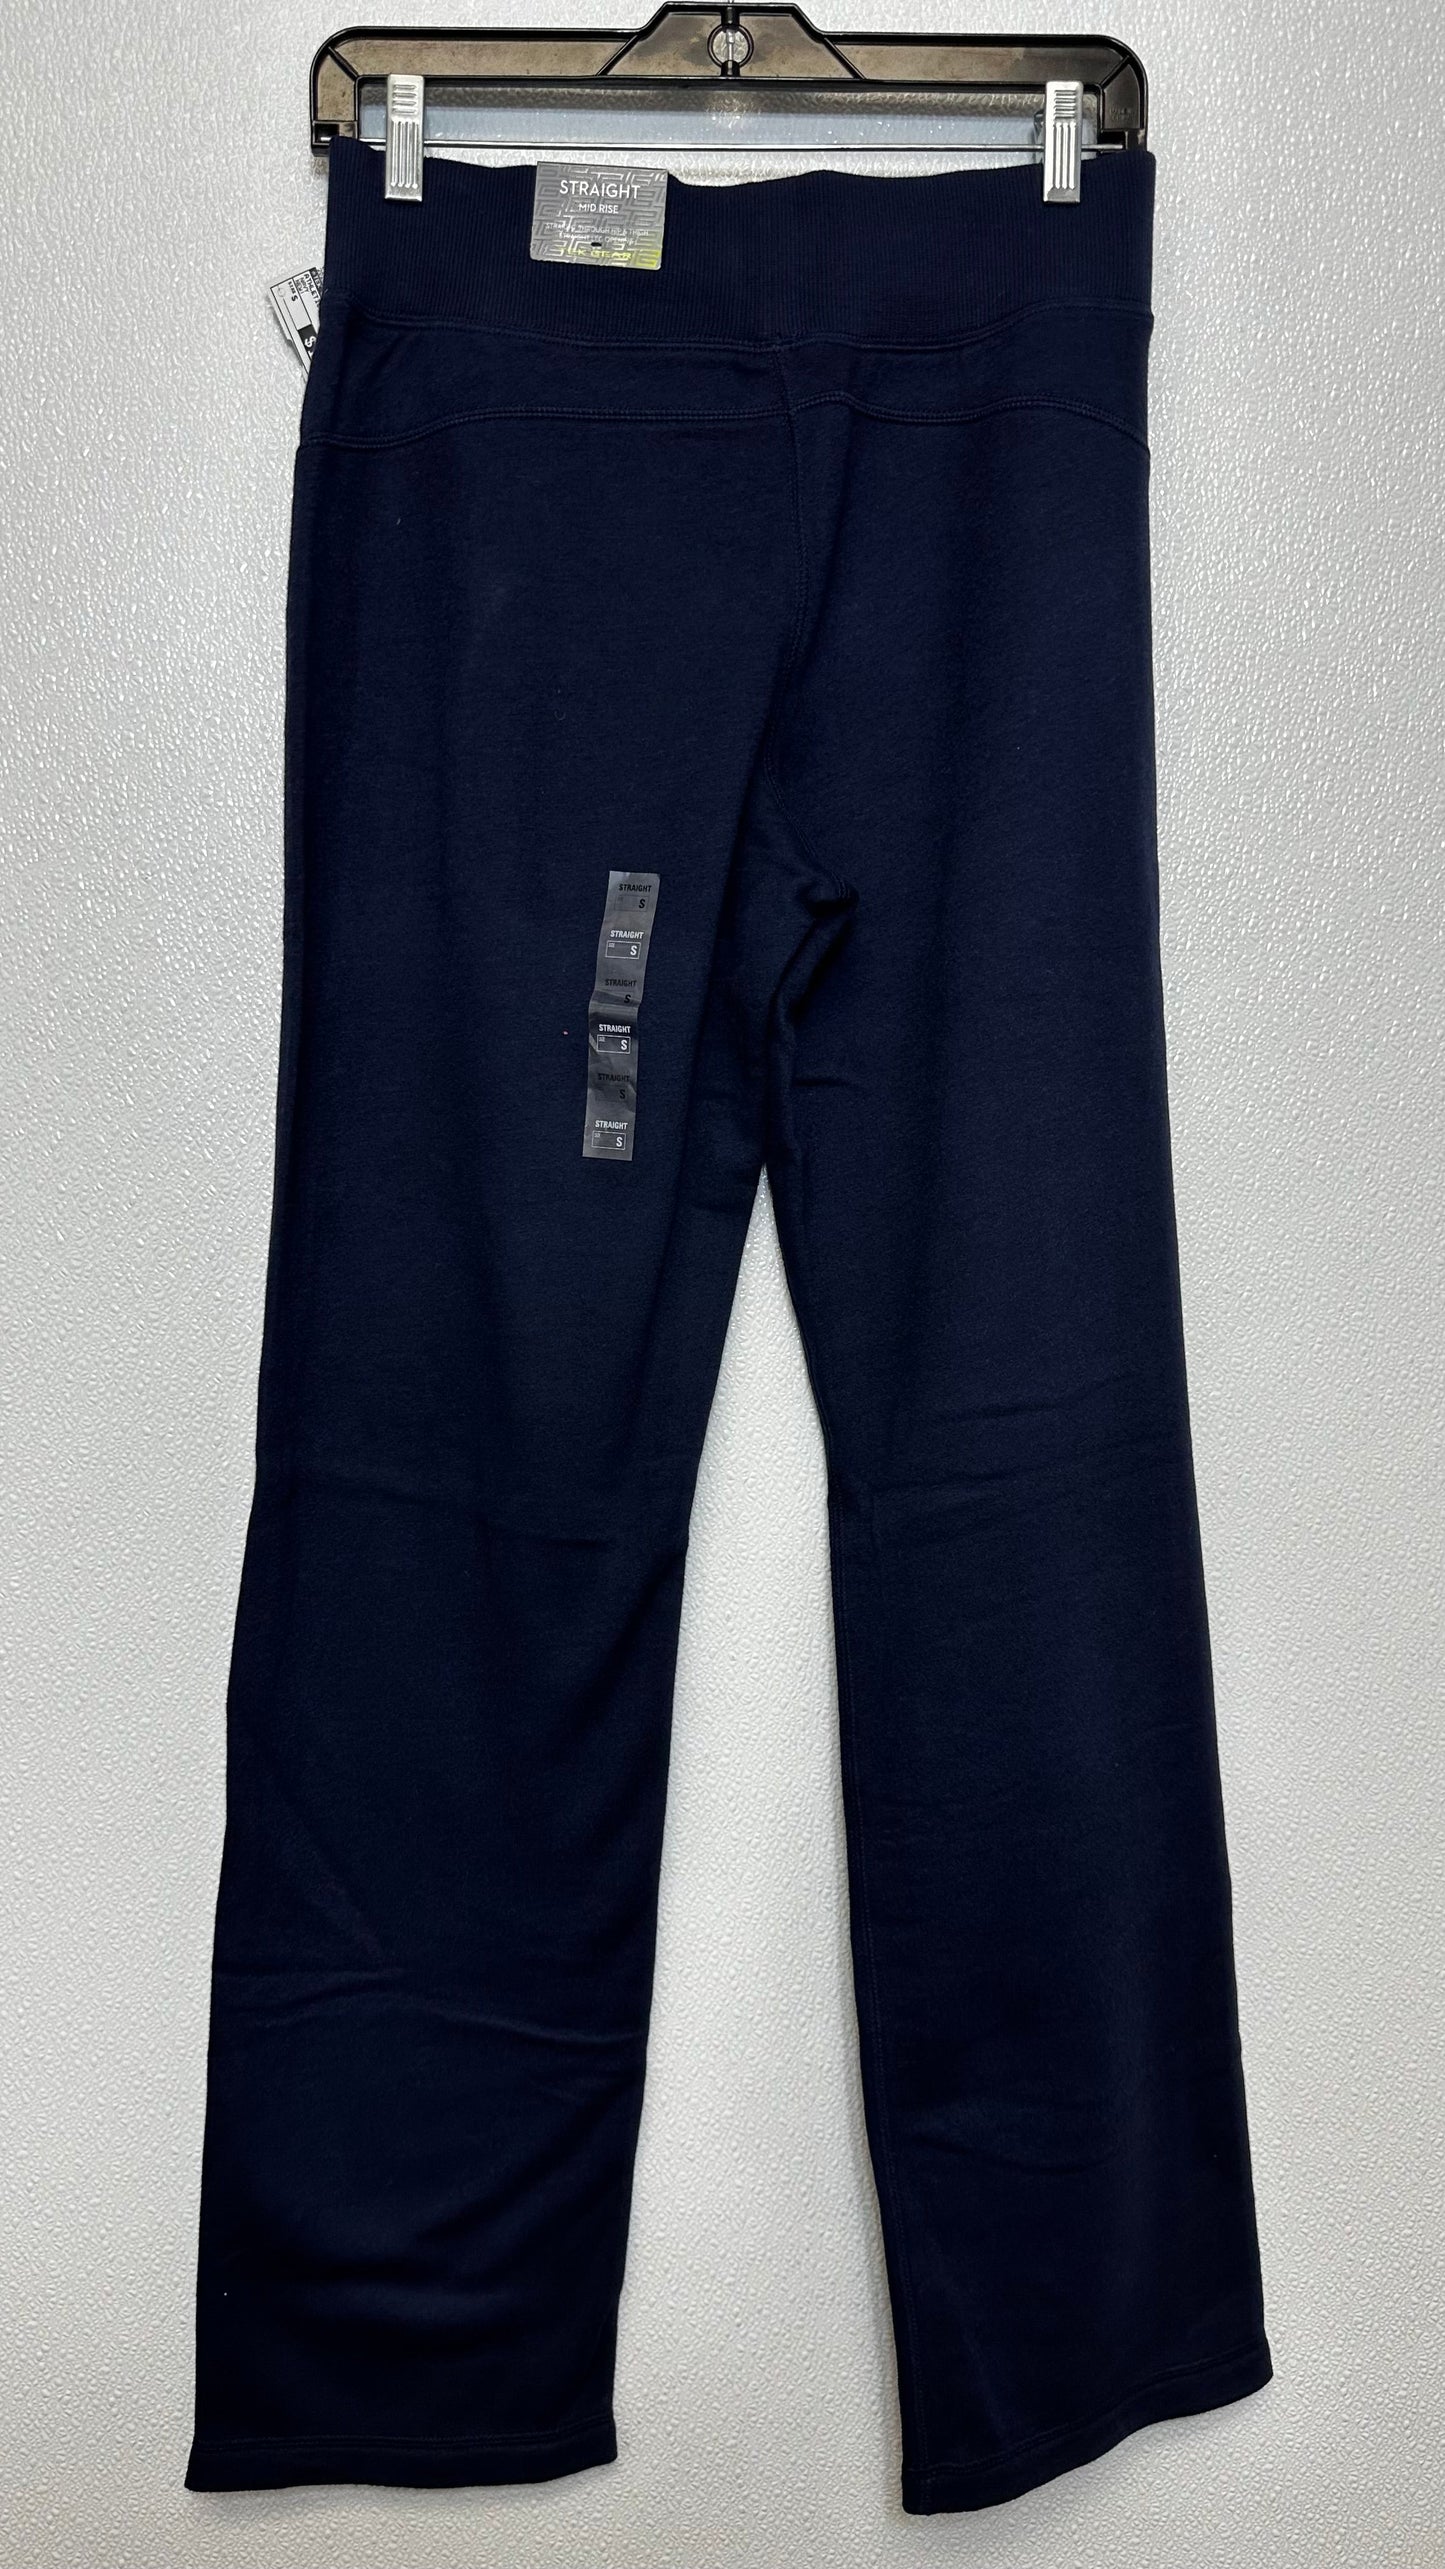 Navy Athletic Pants Tek Gear, Size S